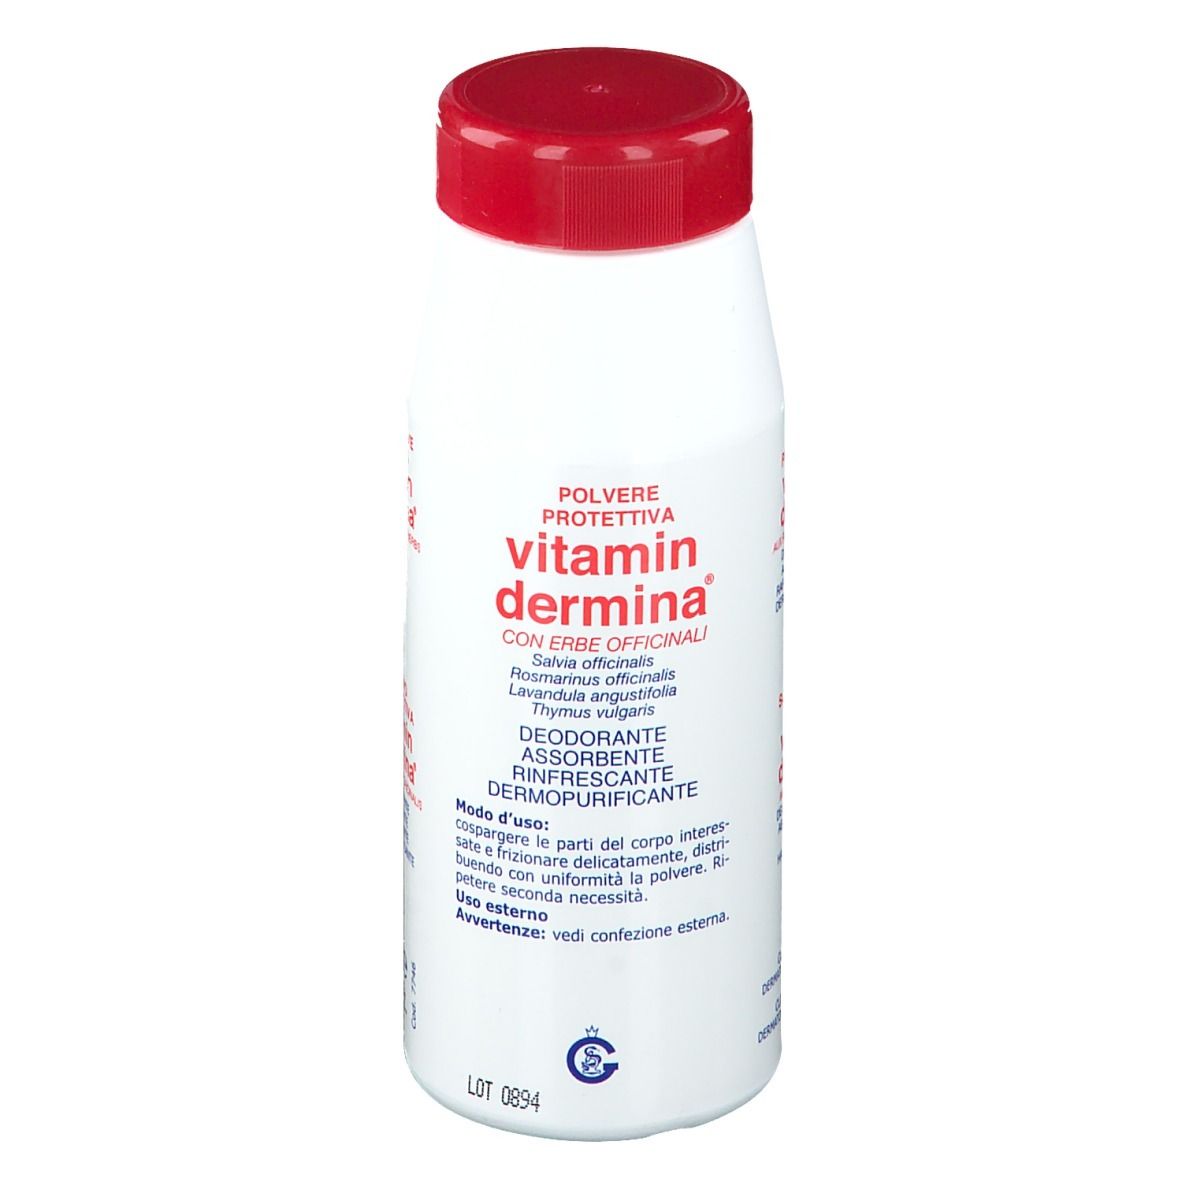 Vitamin dermina® Poudre protectrice